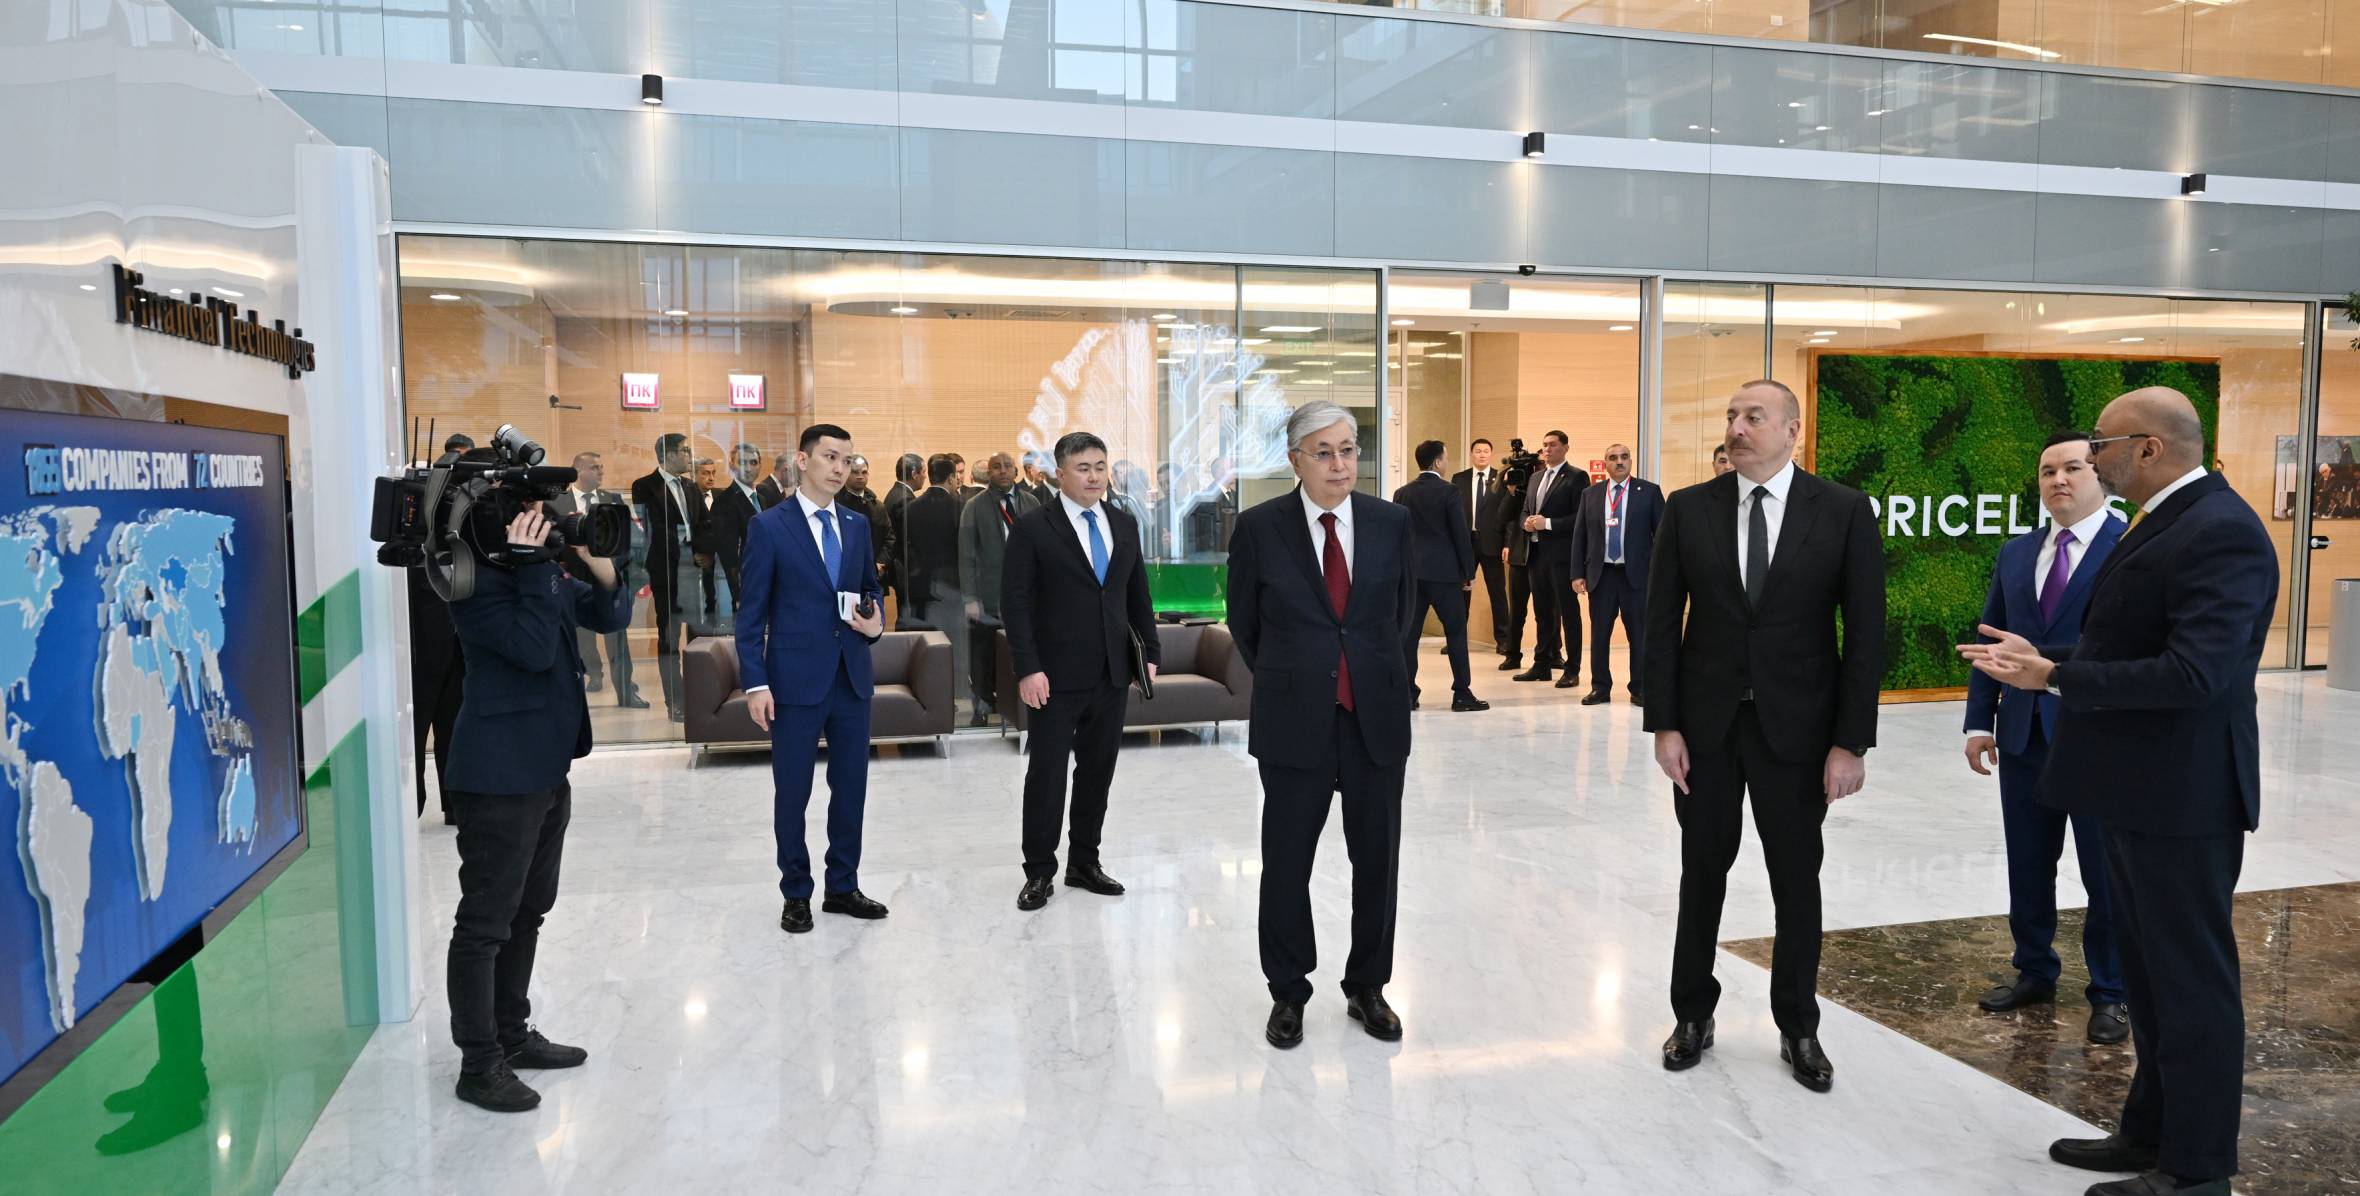 Президенты Азербайджана и Казахстана побывали в Международном финансовом центре «Астана»